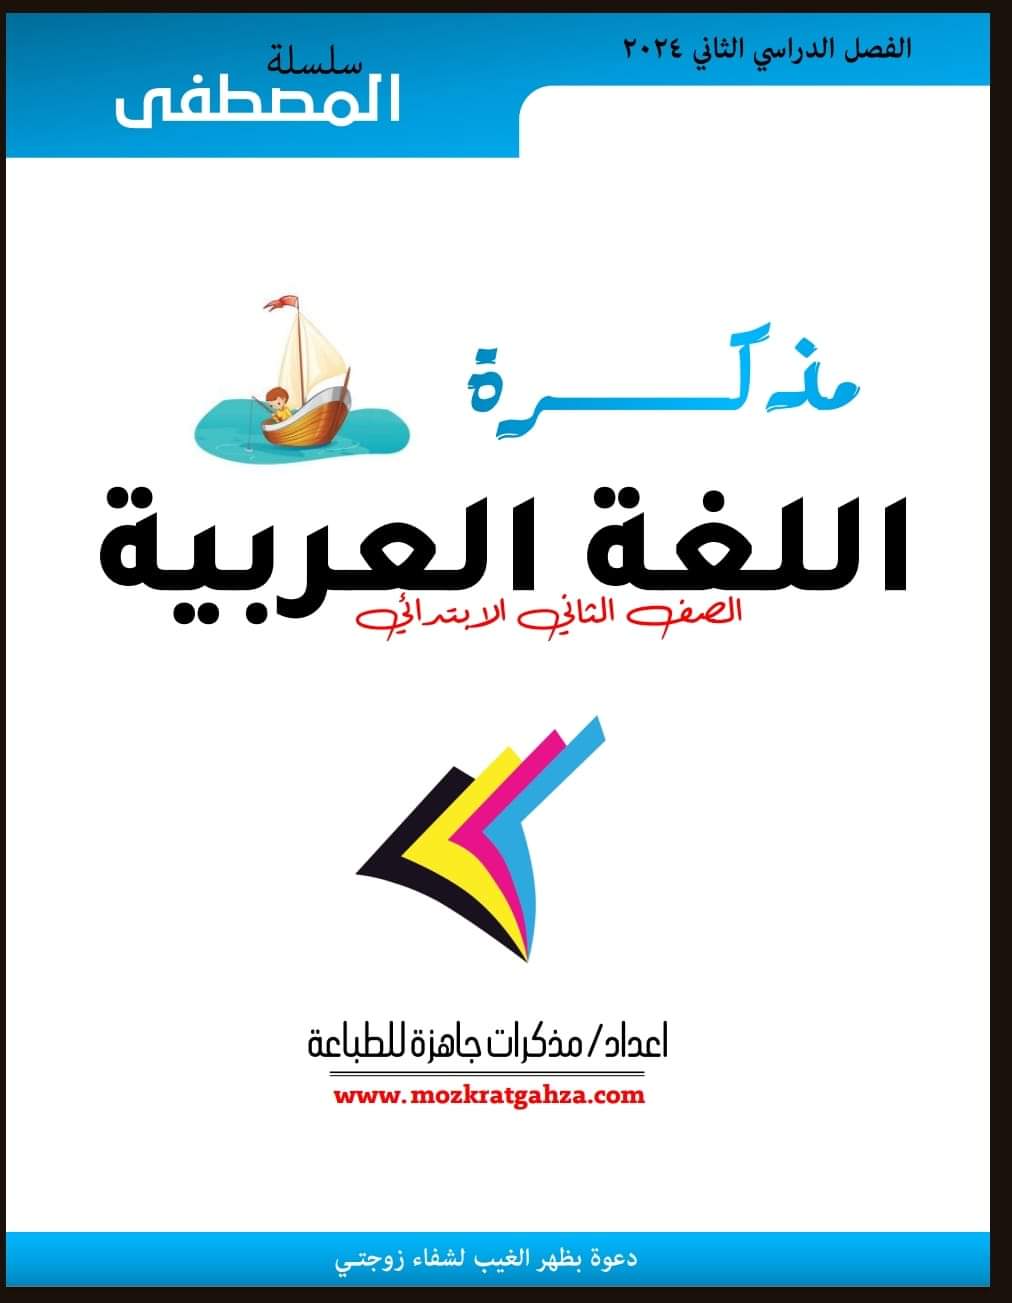 مذكرة المصطفى لغة عربية الصف الثاني الابتدائي الفصل الدراسي الثاني ٢٠٢٤